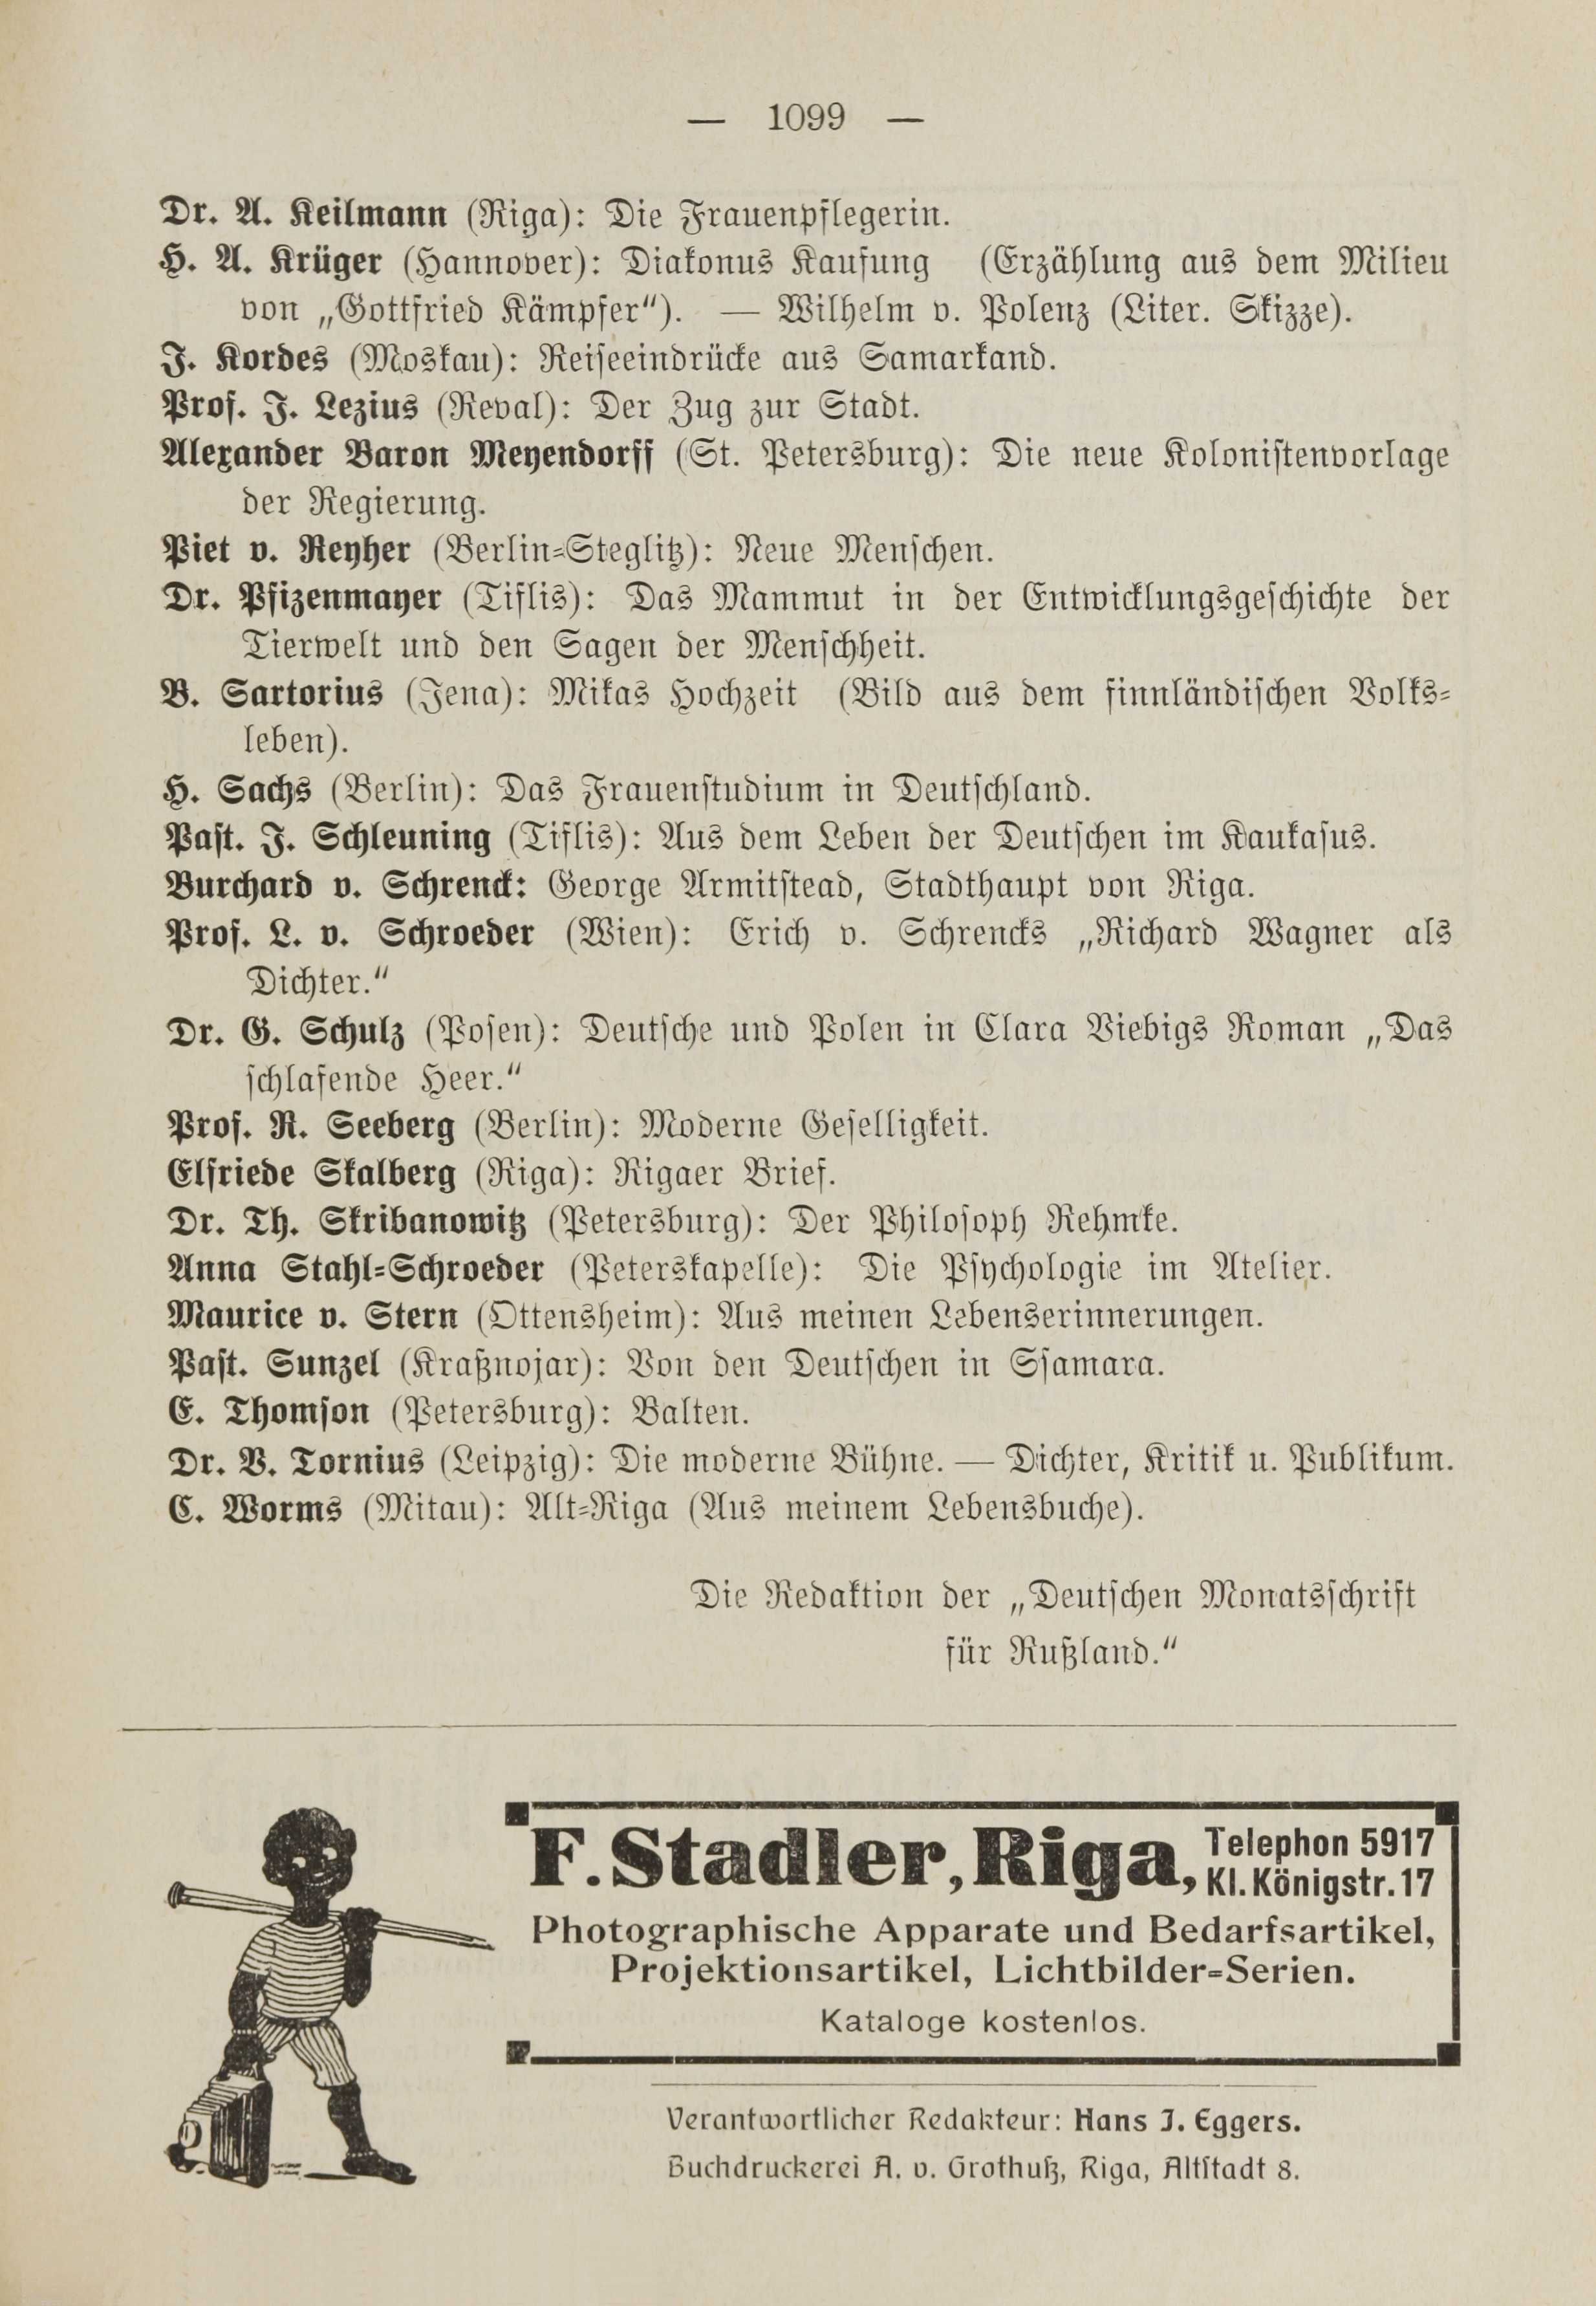 Deutsche Monatsschrift für Russland [1] (1912) | 1107. (1099) Основной текст